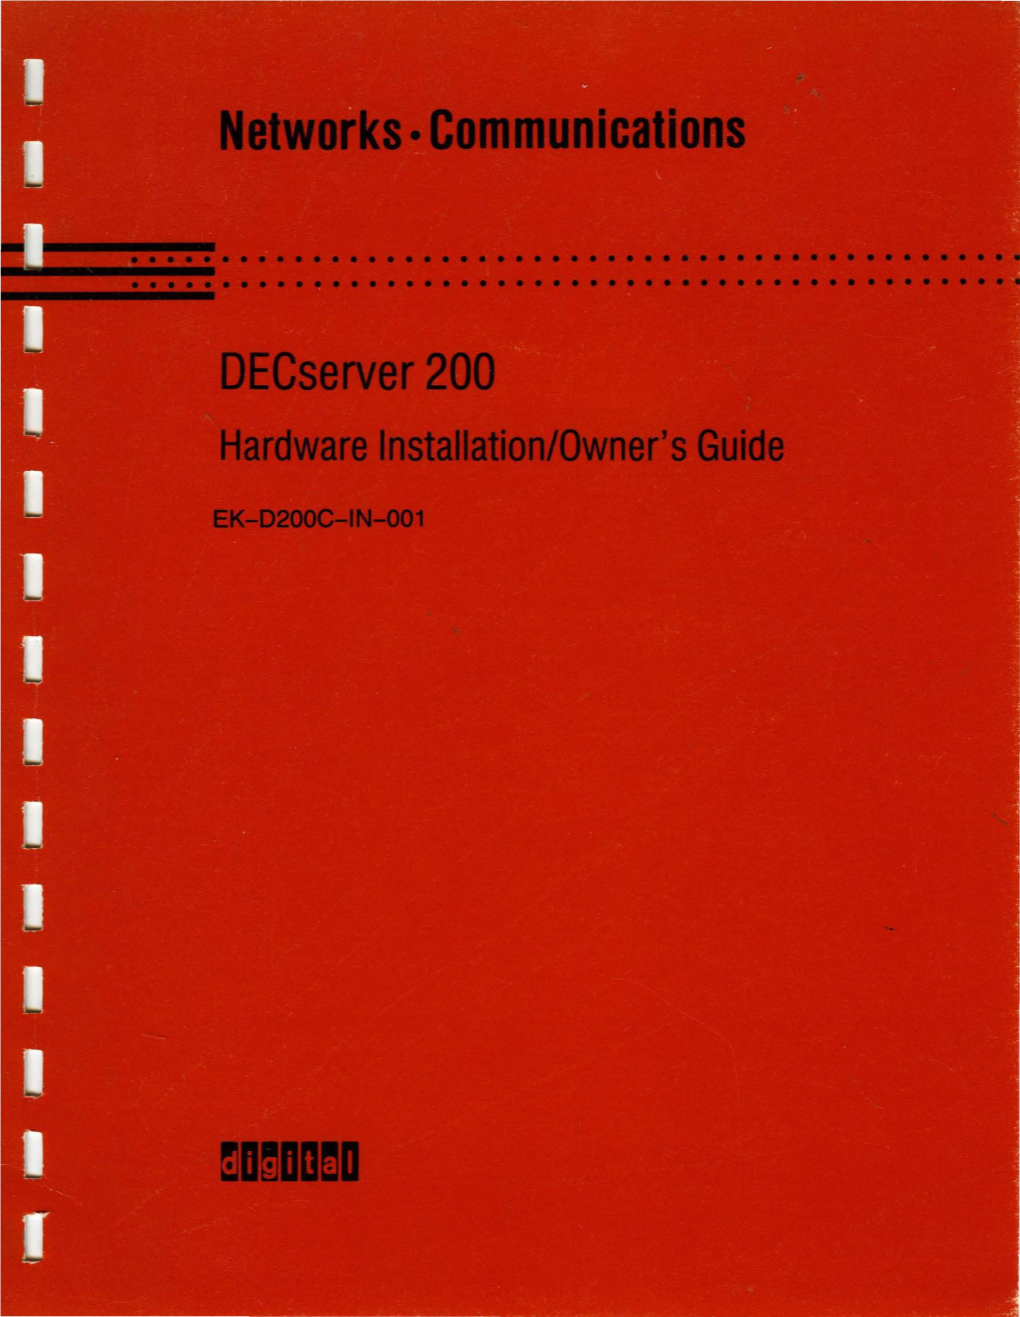 Decserver 200 Hardware Installation/Owner's Guide Order No